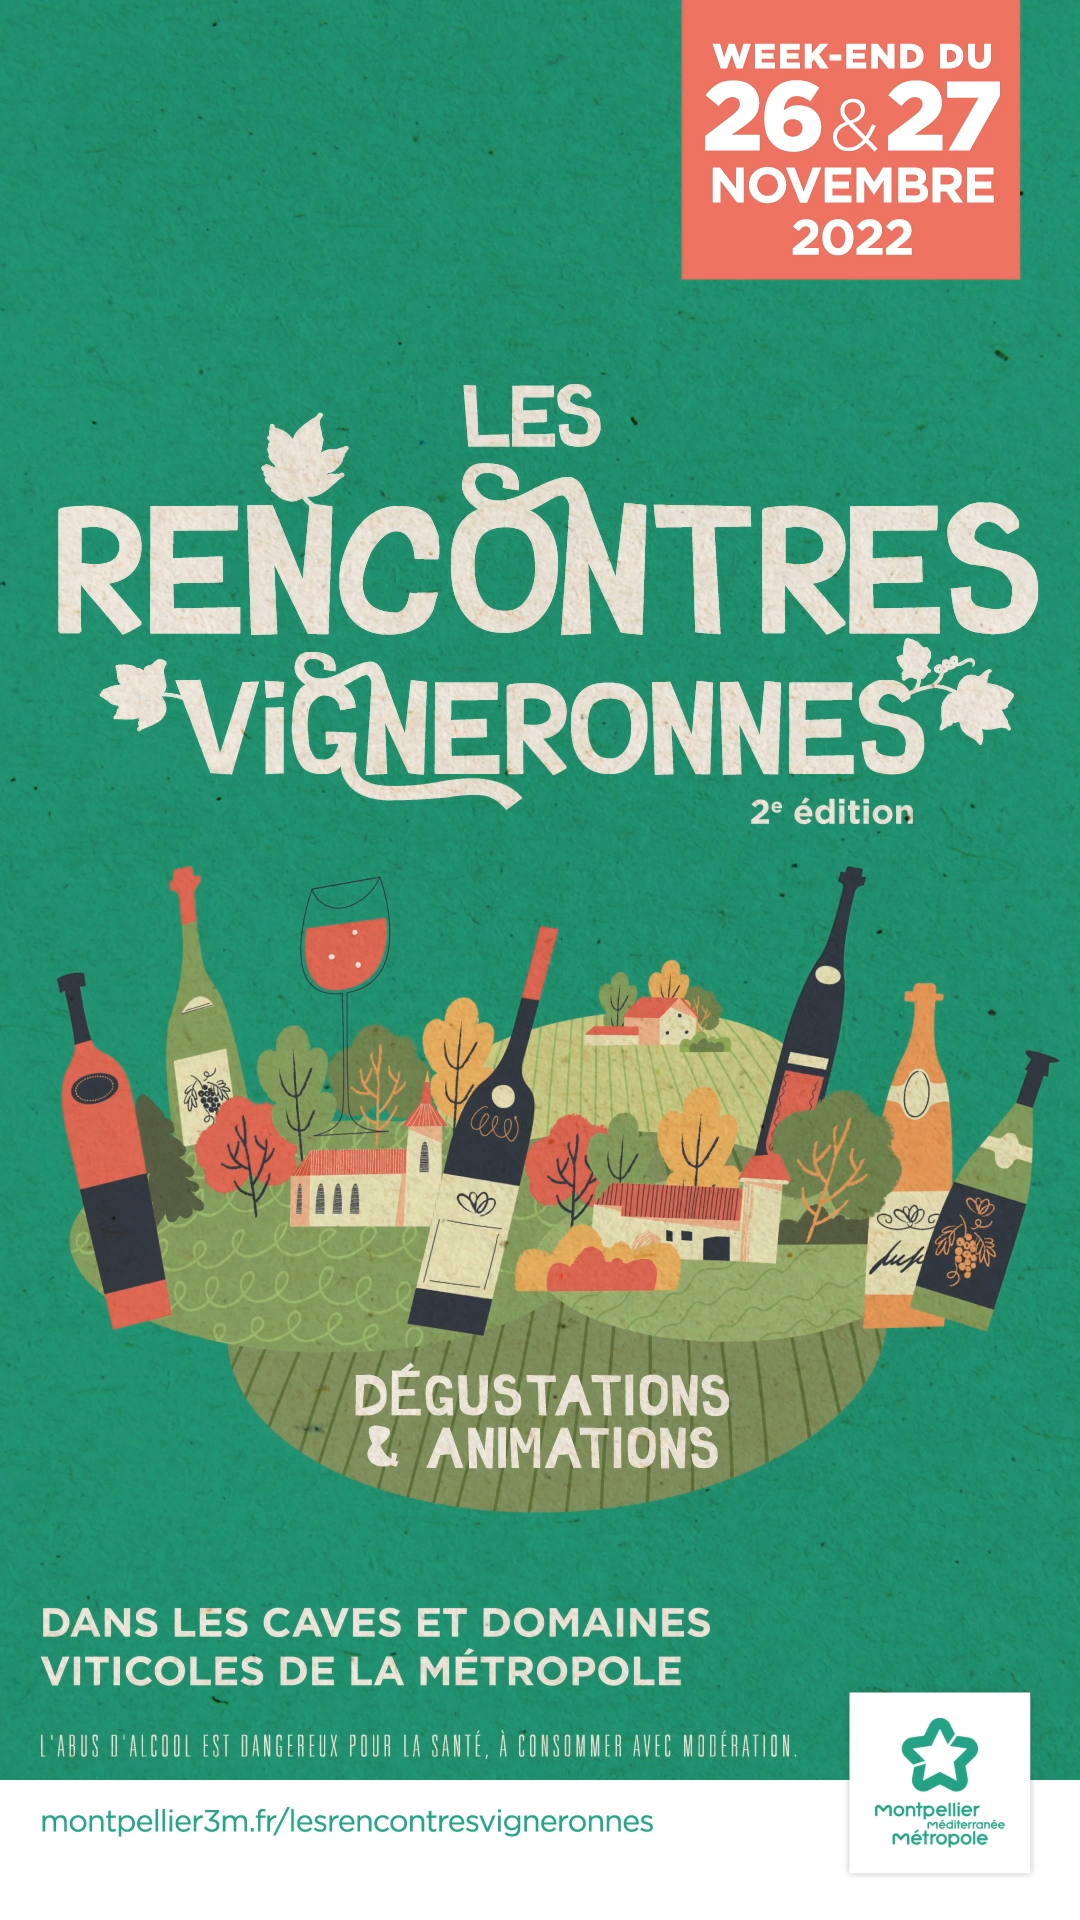 Communiqué de presse : Montpellier Méditerranée Métroole organise la 2e édition des Rencontres Vigneronnes, samedi 26 et dimanche 27 novembre 2022